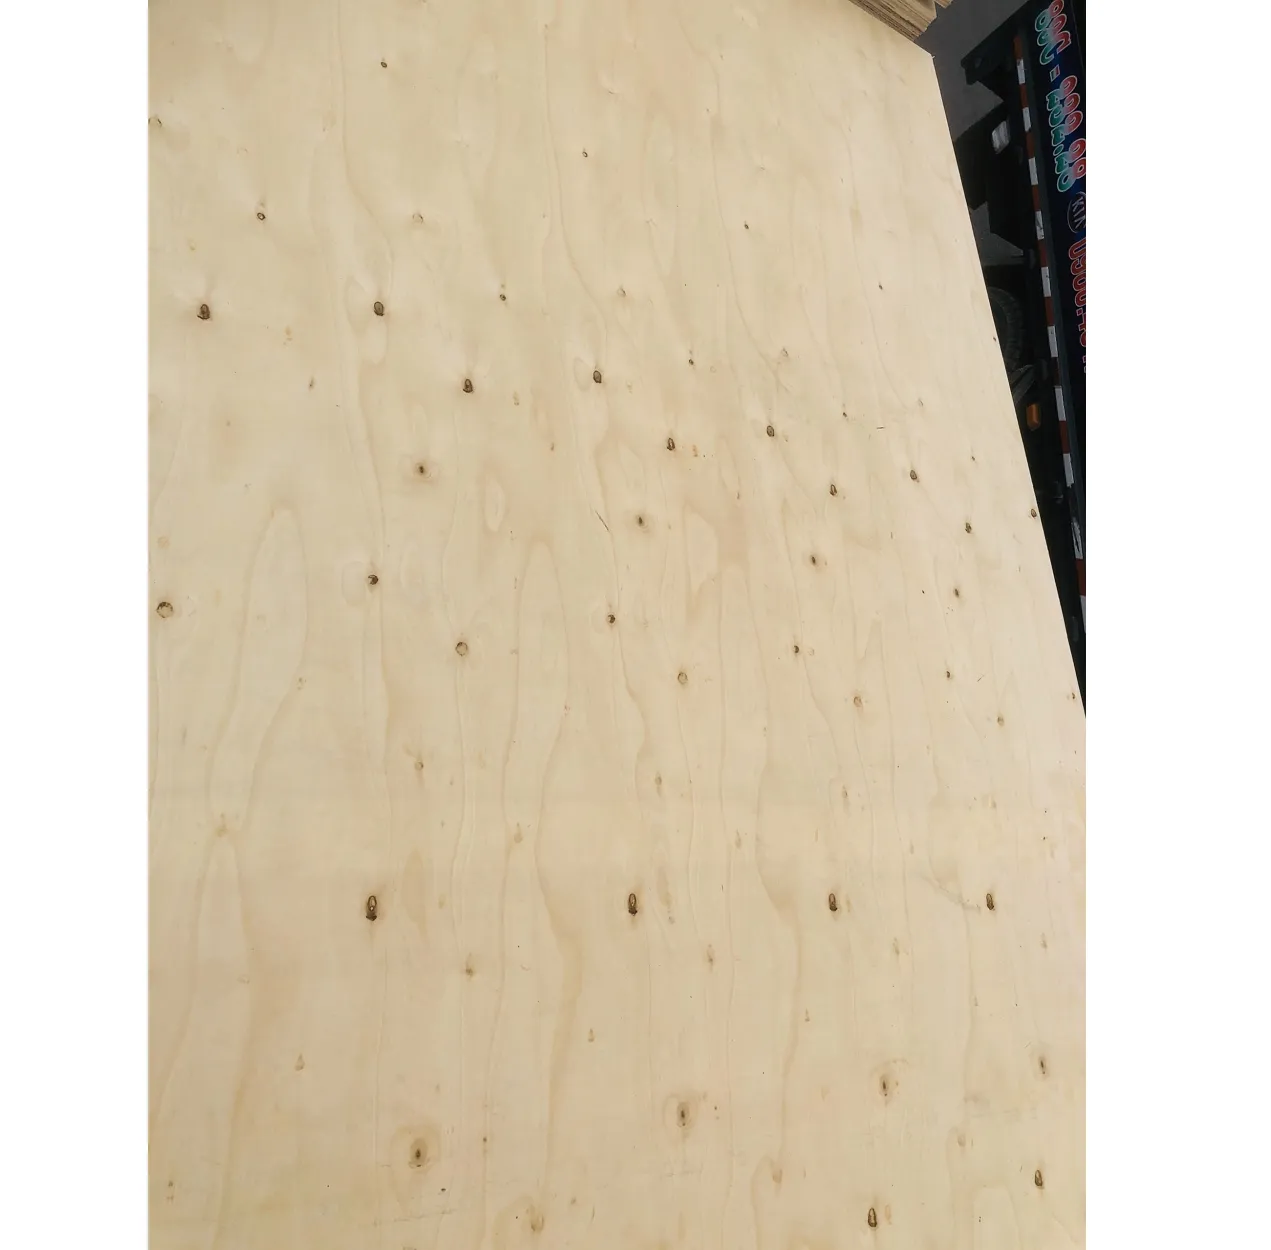 ベトナム合板シート3MmAaバスウッドグレード合板おもちゃ部品用木材まな板ブランクレーザー用